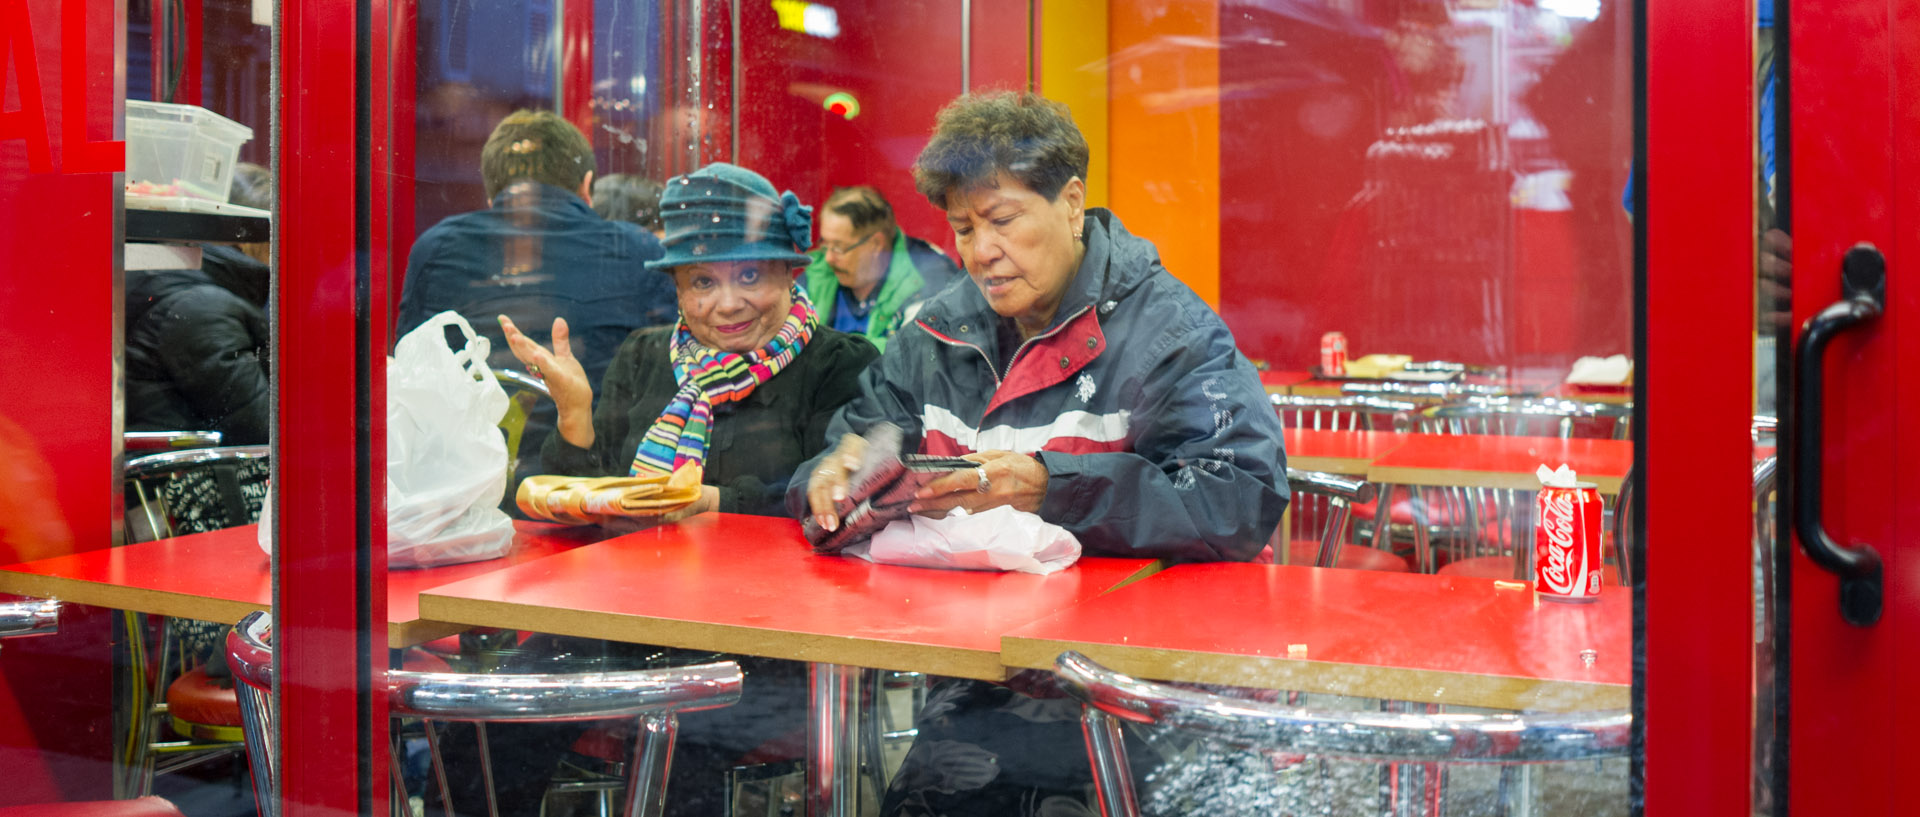 Deux femmes dans un fast food, rue de Steinkerque, à Paris.